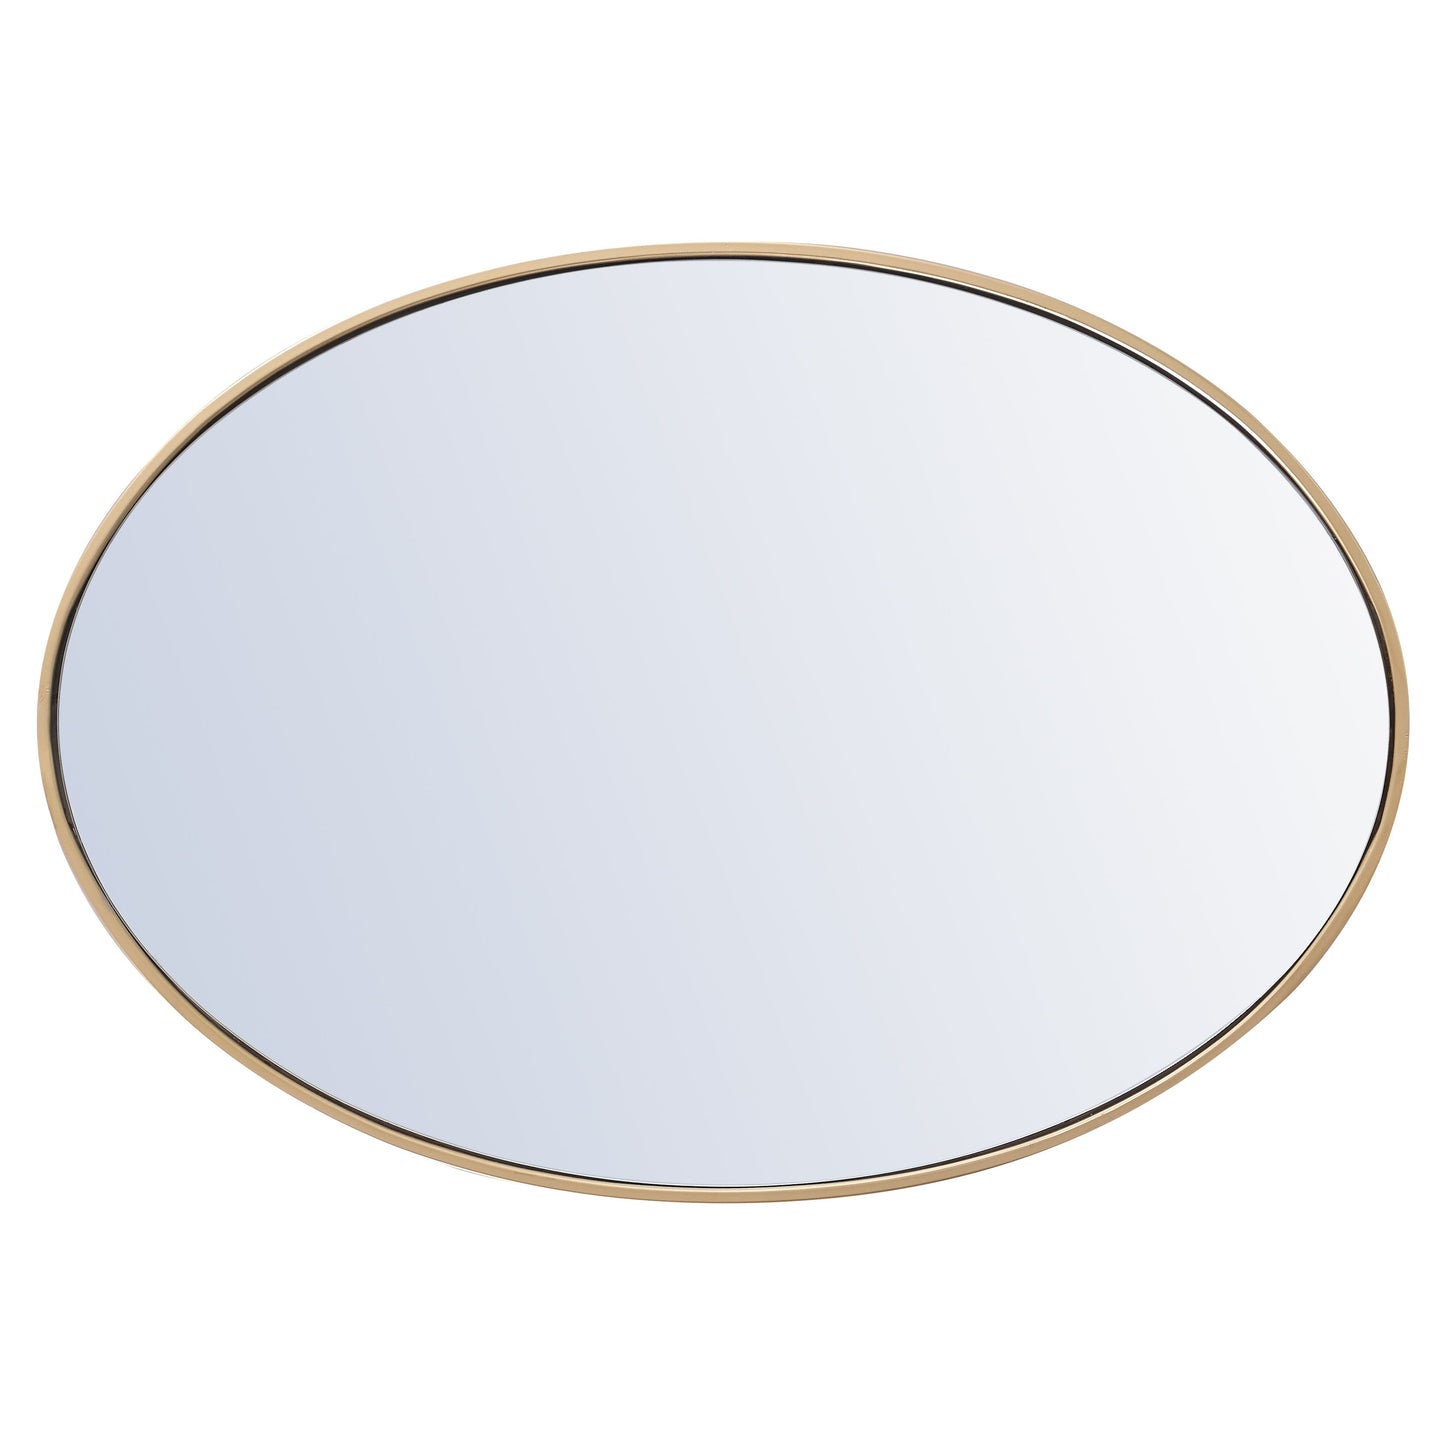 MR4624BR Decker 34" x 24" Metal Framed Oval Mirror in Brass